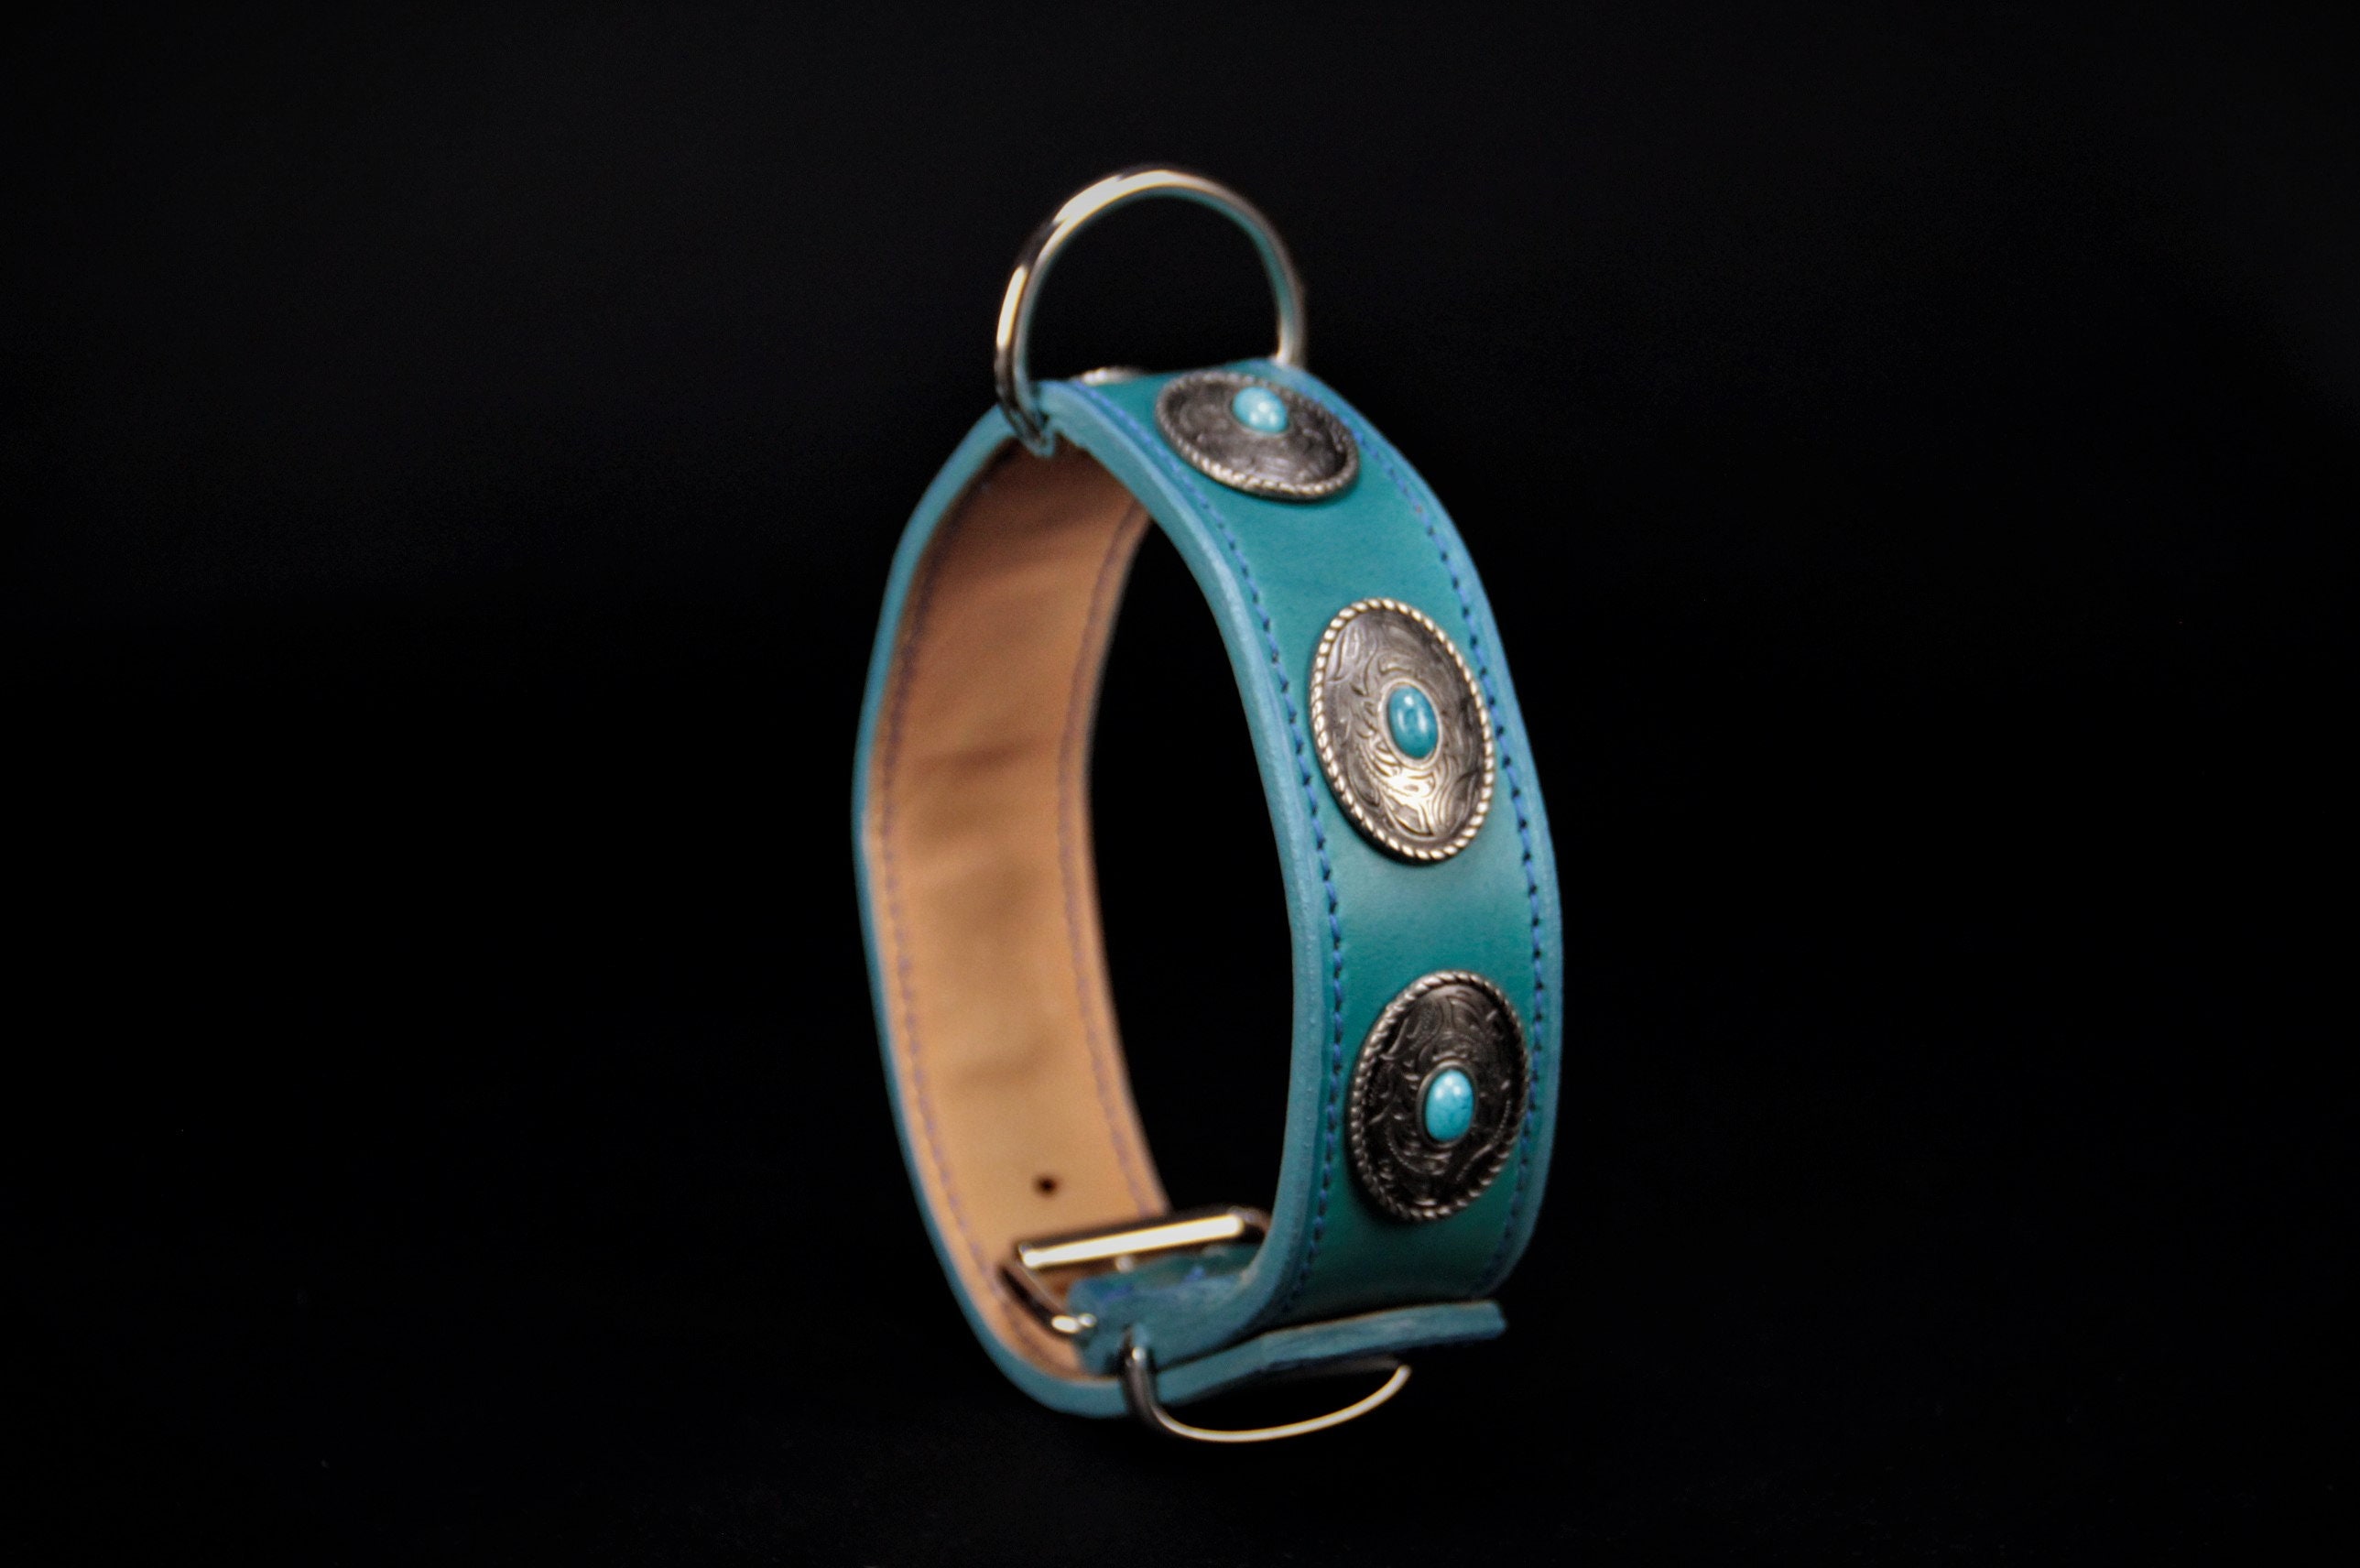 Collier Pour Chien en Cuir Vachette Bleu Turquoise Décors Conchas Turquoise, Dog Collar